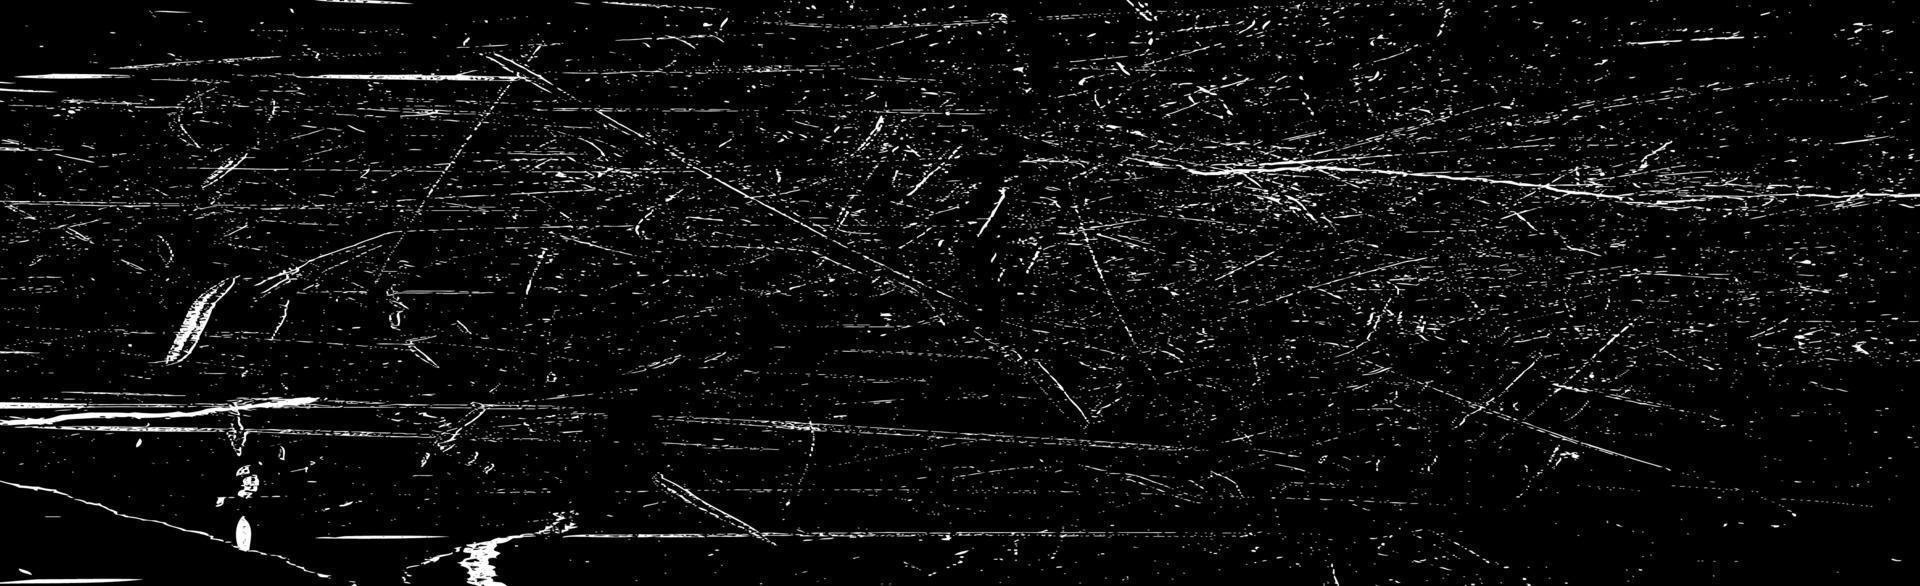 en hel del vita stänk på en svart panoramabakgrund - vektor